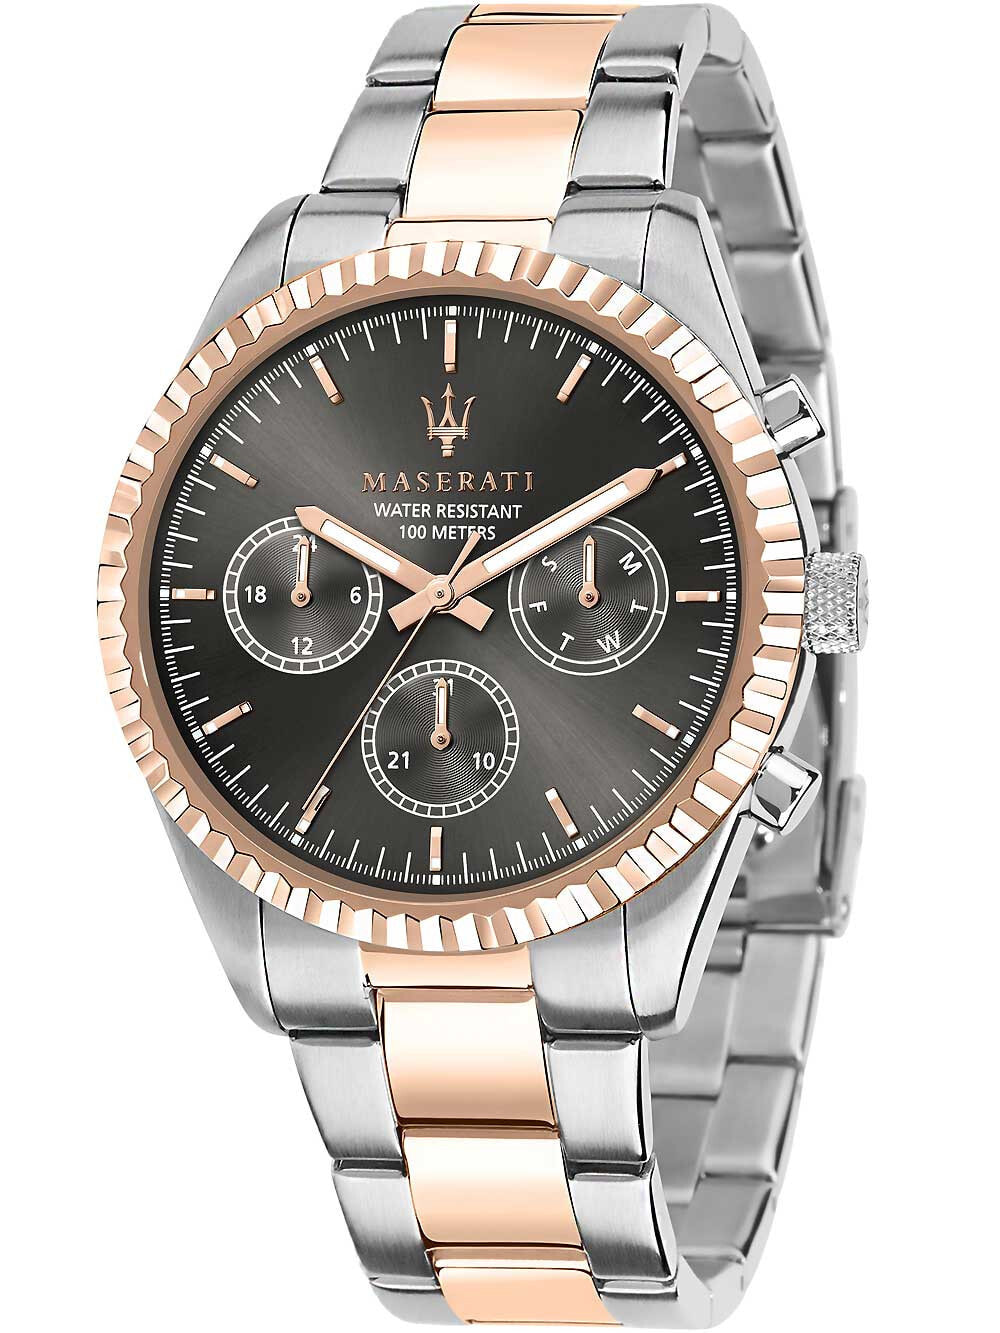 Мужские наручные часы с серебряным браслетом Maserati R8853100020 Competizione mens watch 43mm 10ATM